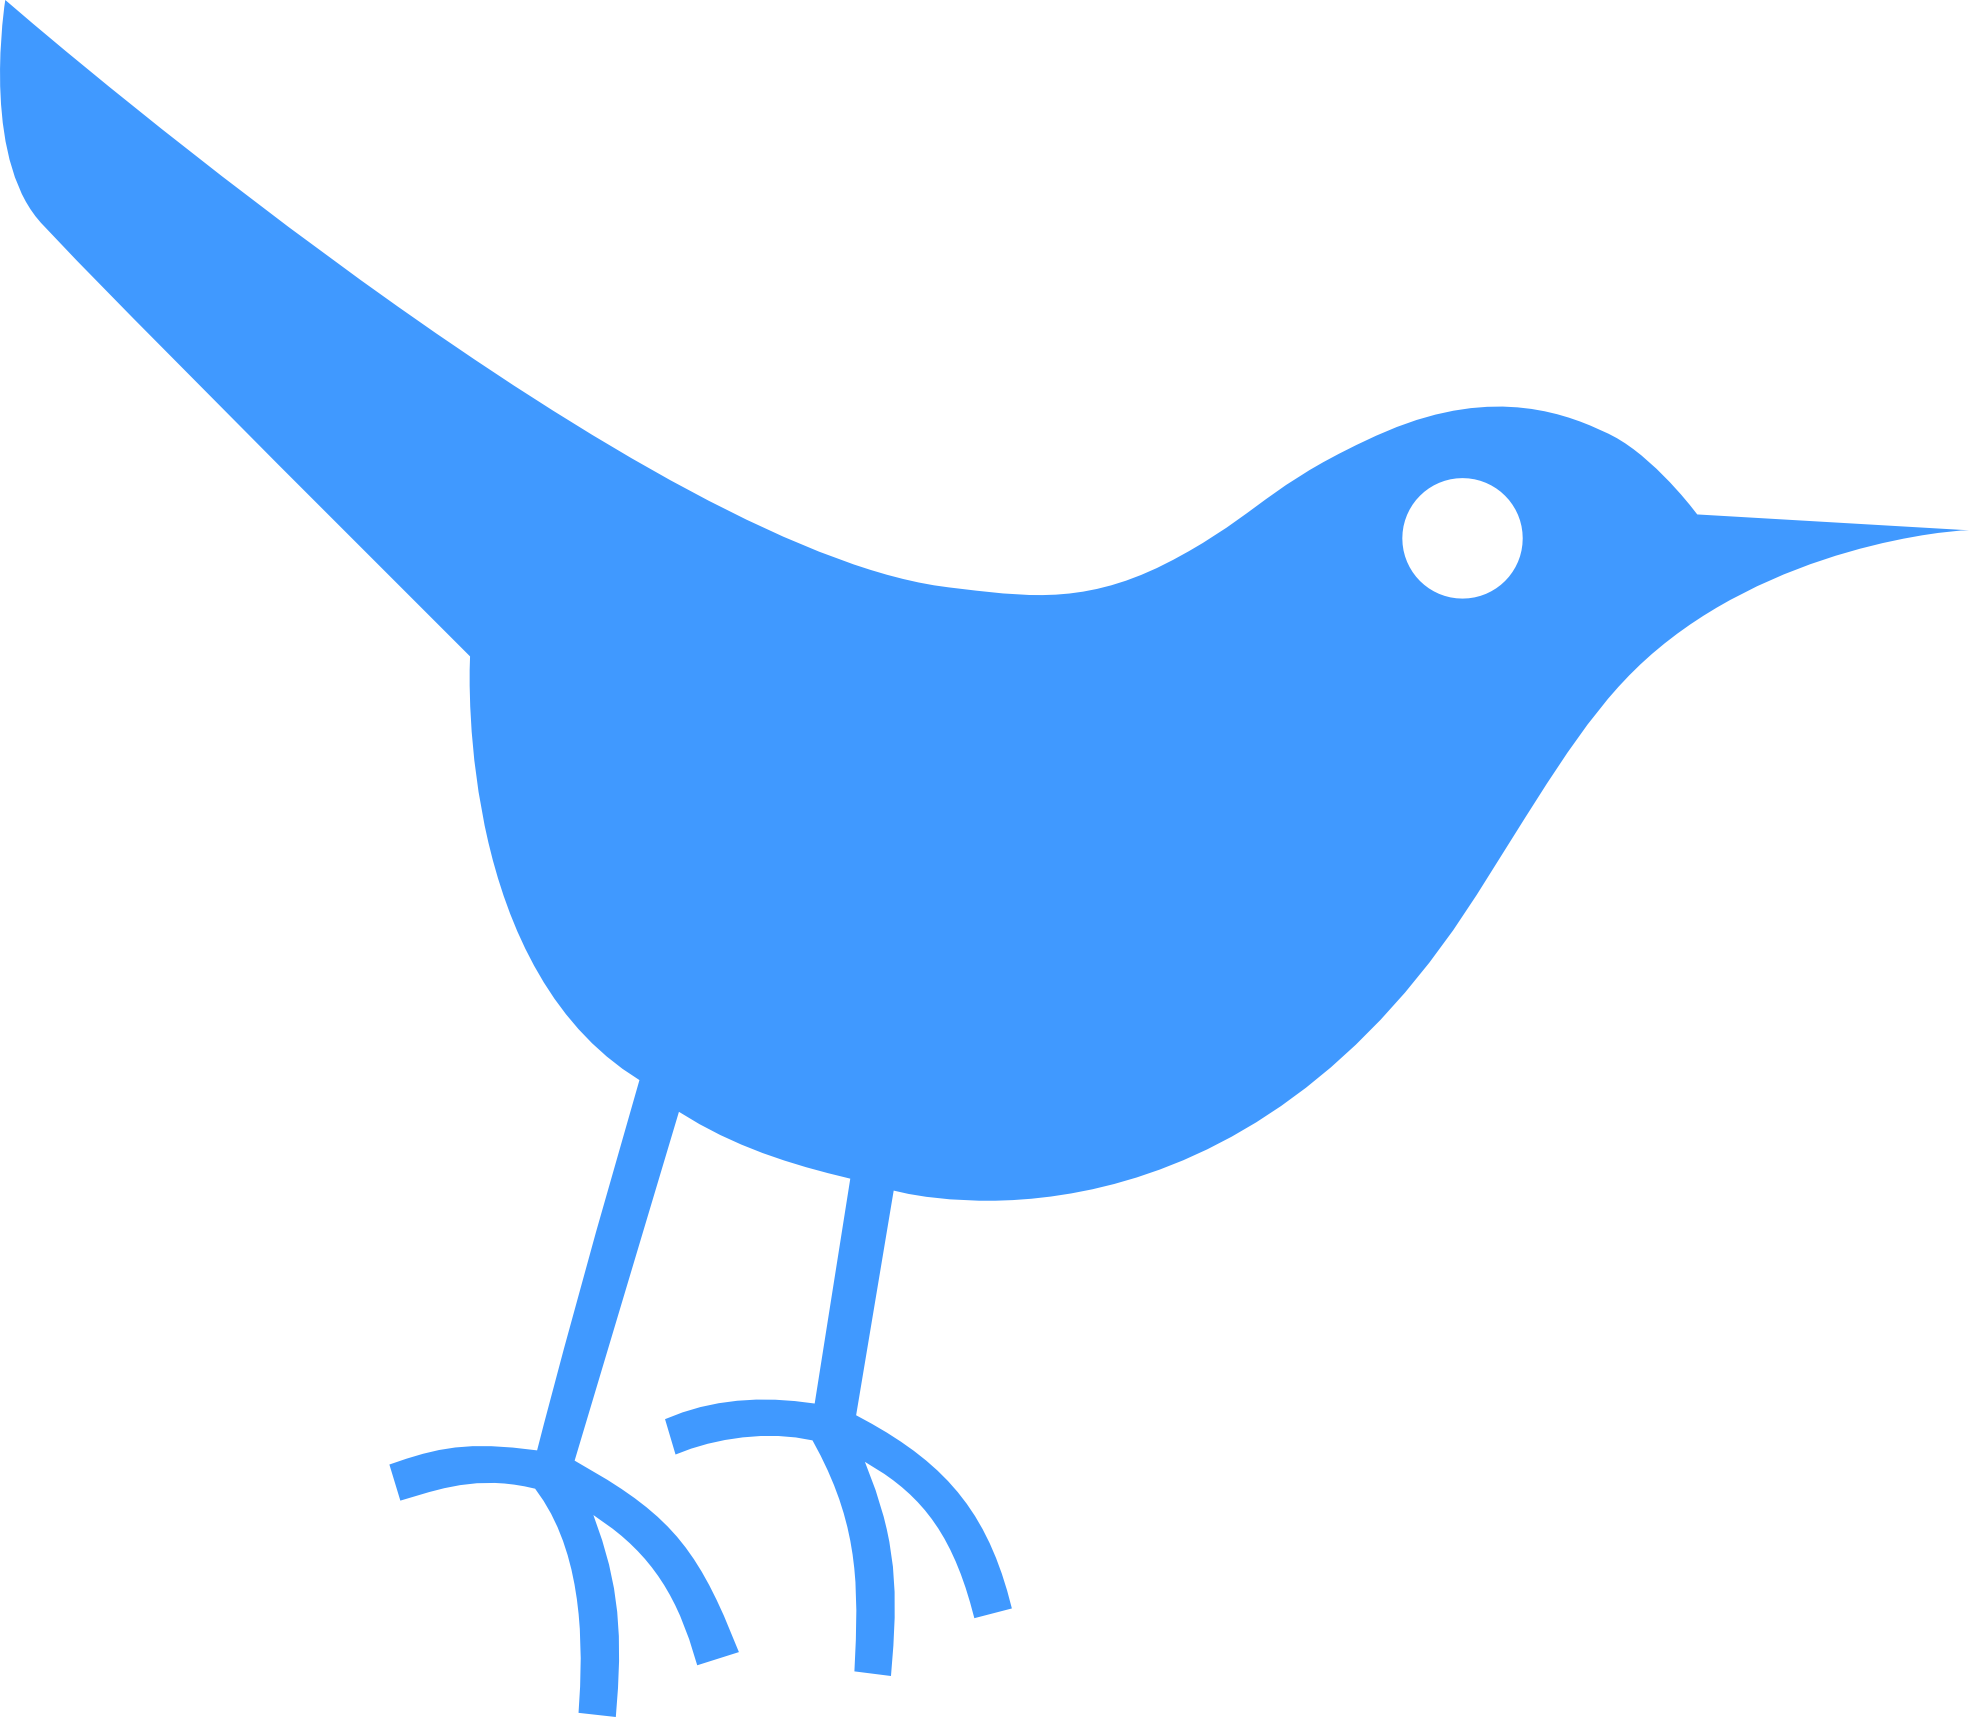 Twitter Bird Tweet Tweet 44 1969px 63 - Twitter Bird Icon (1969x1717)